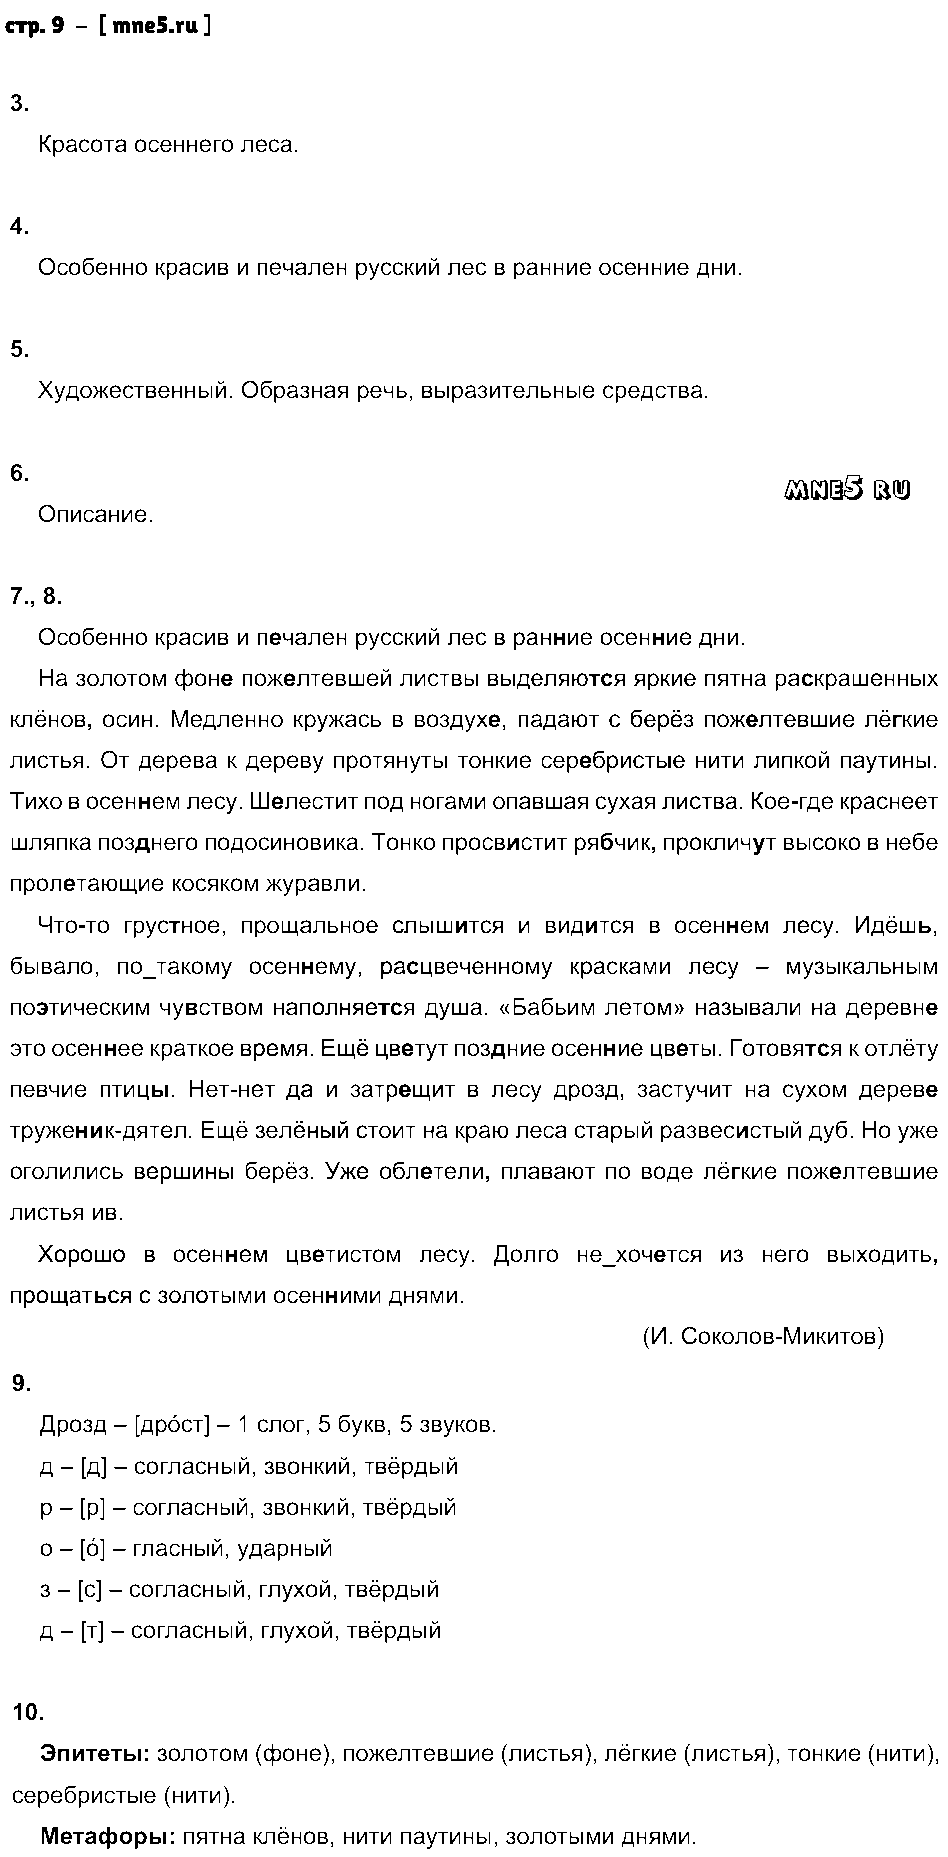 ГДЗ Русский язык 7 класс - стр. 9